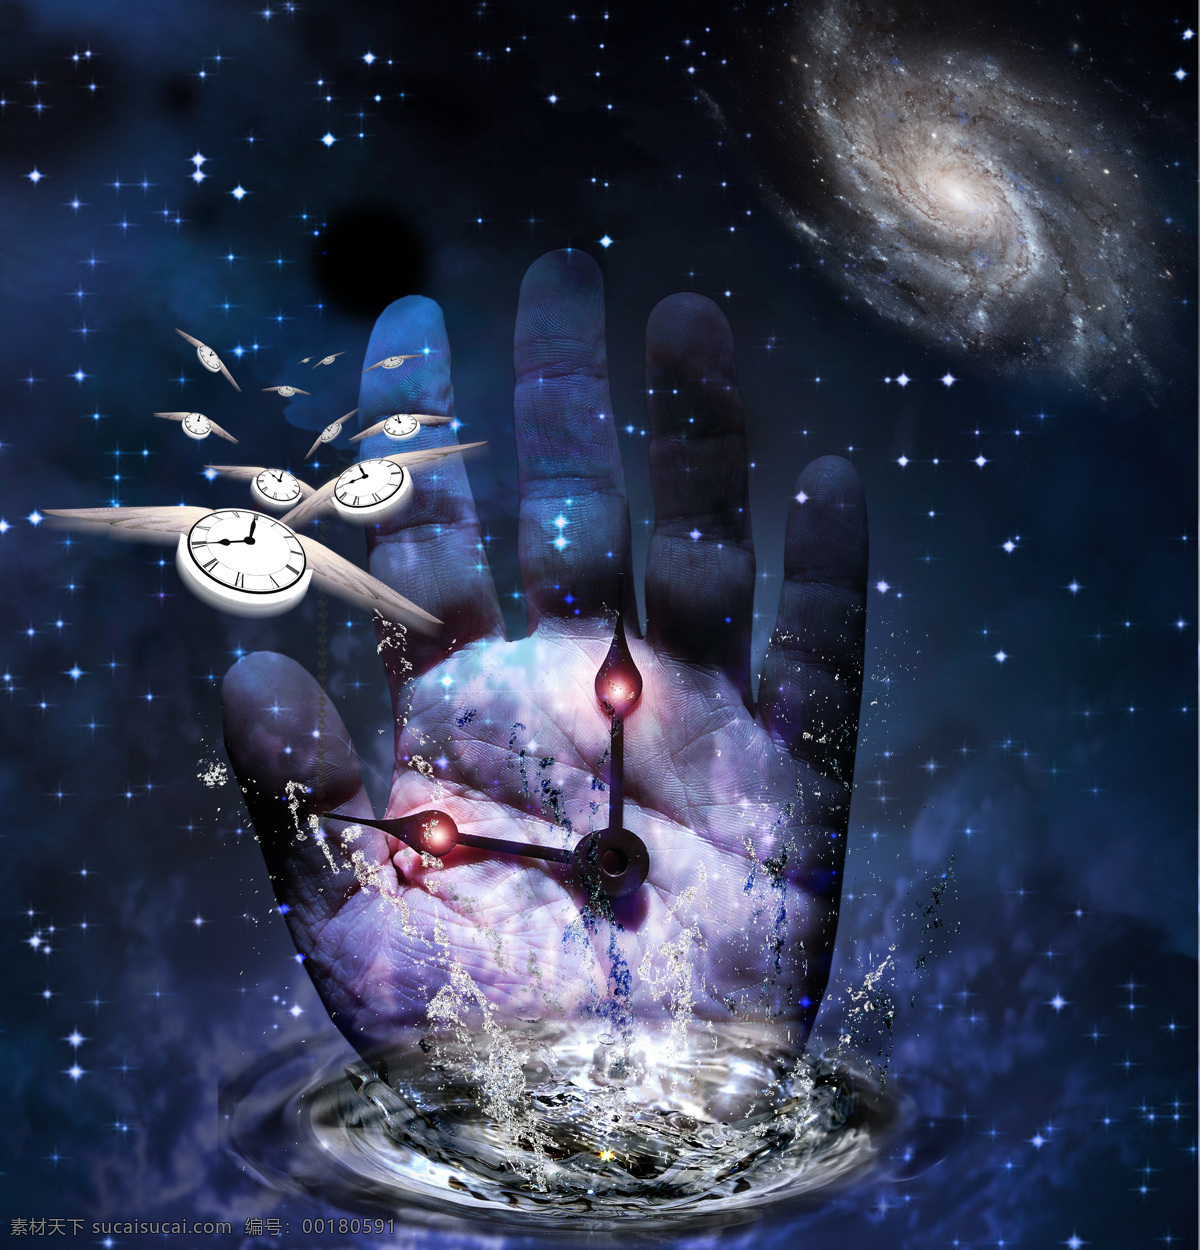 概念 背景 素材图片 手 手势 钟表 指针 星空 星系 创意 概念素材 抽象 艺术 其他类别 生活百科